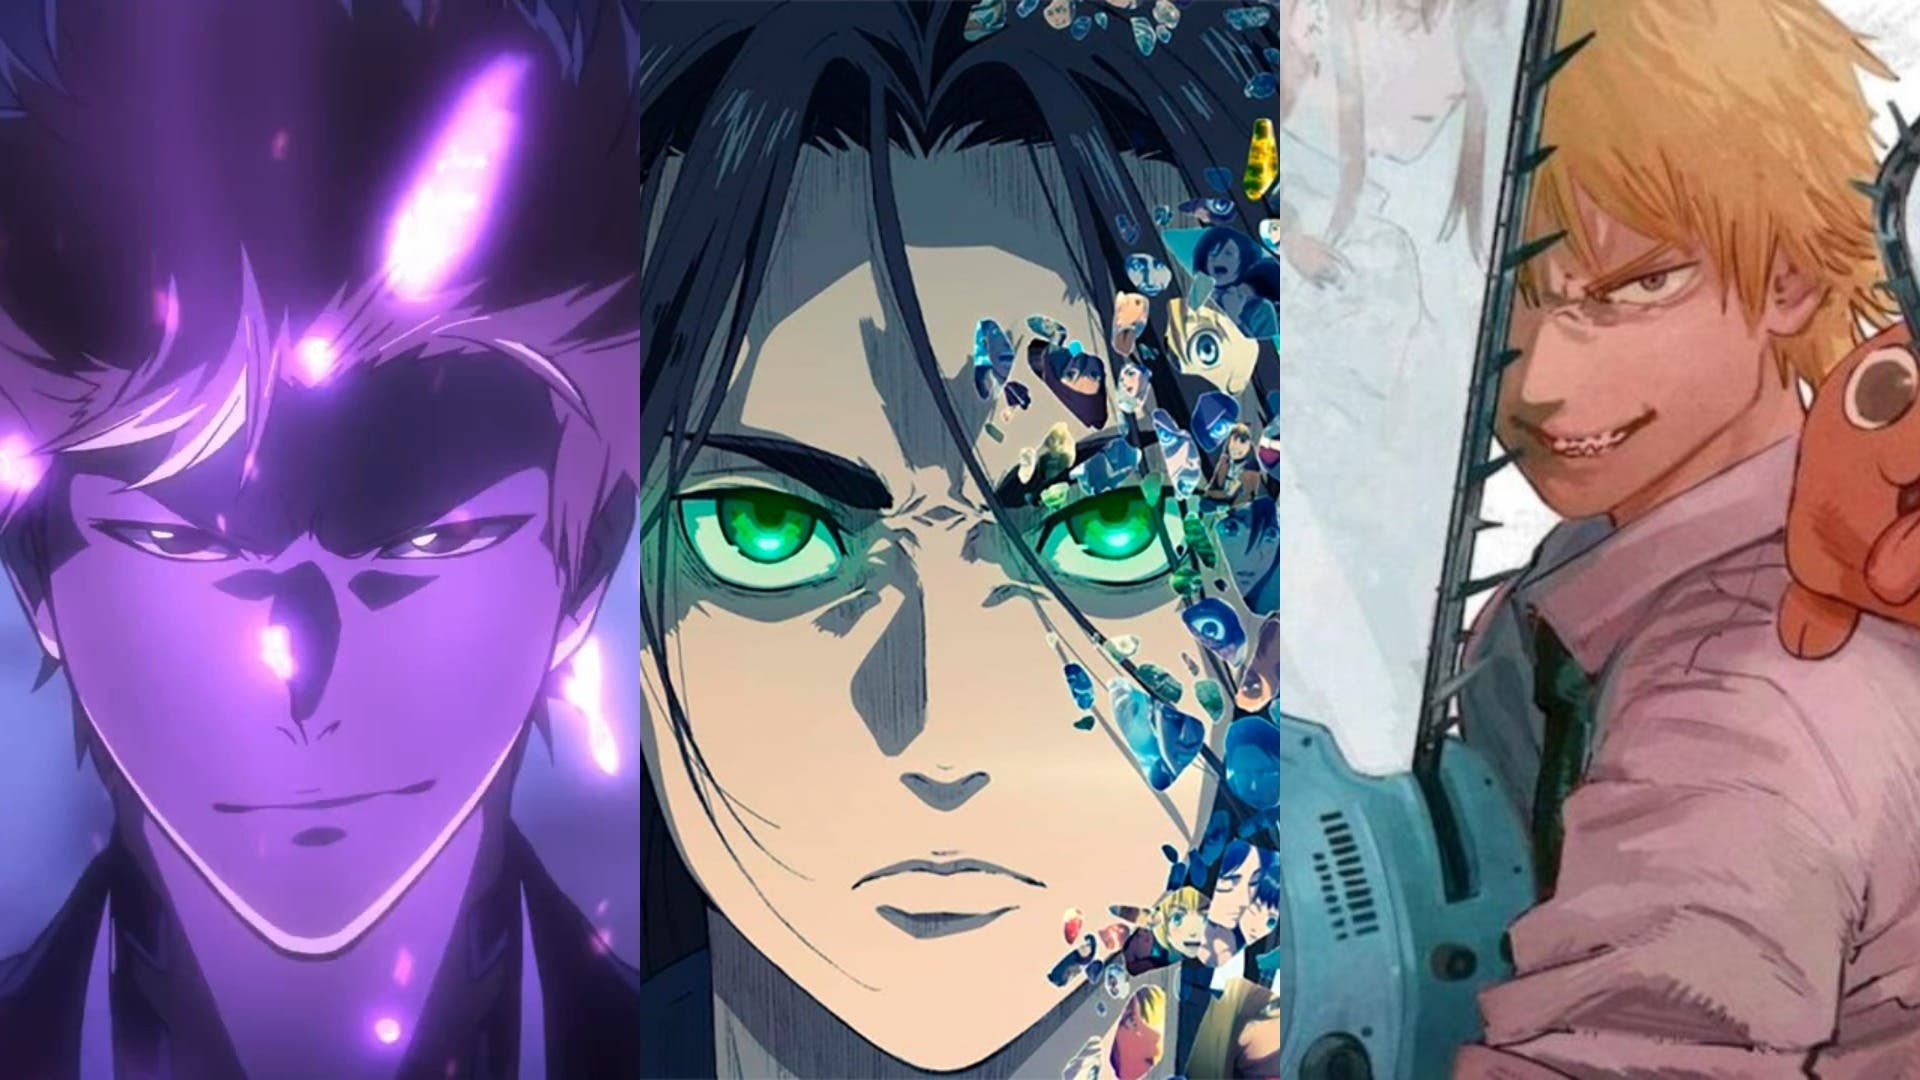 Estrenos anime enero 2022: Shingeki no Kyojin y otras series más